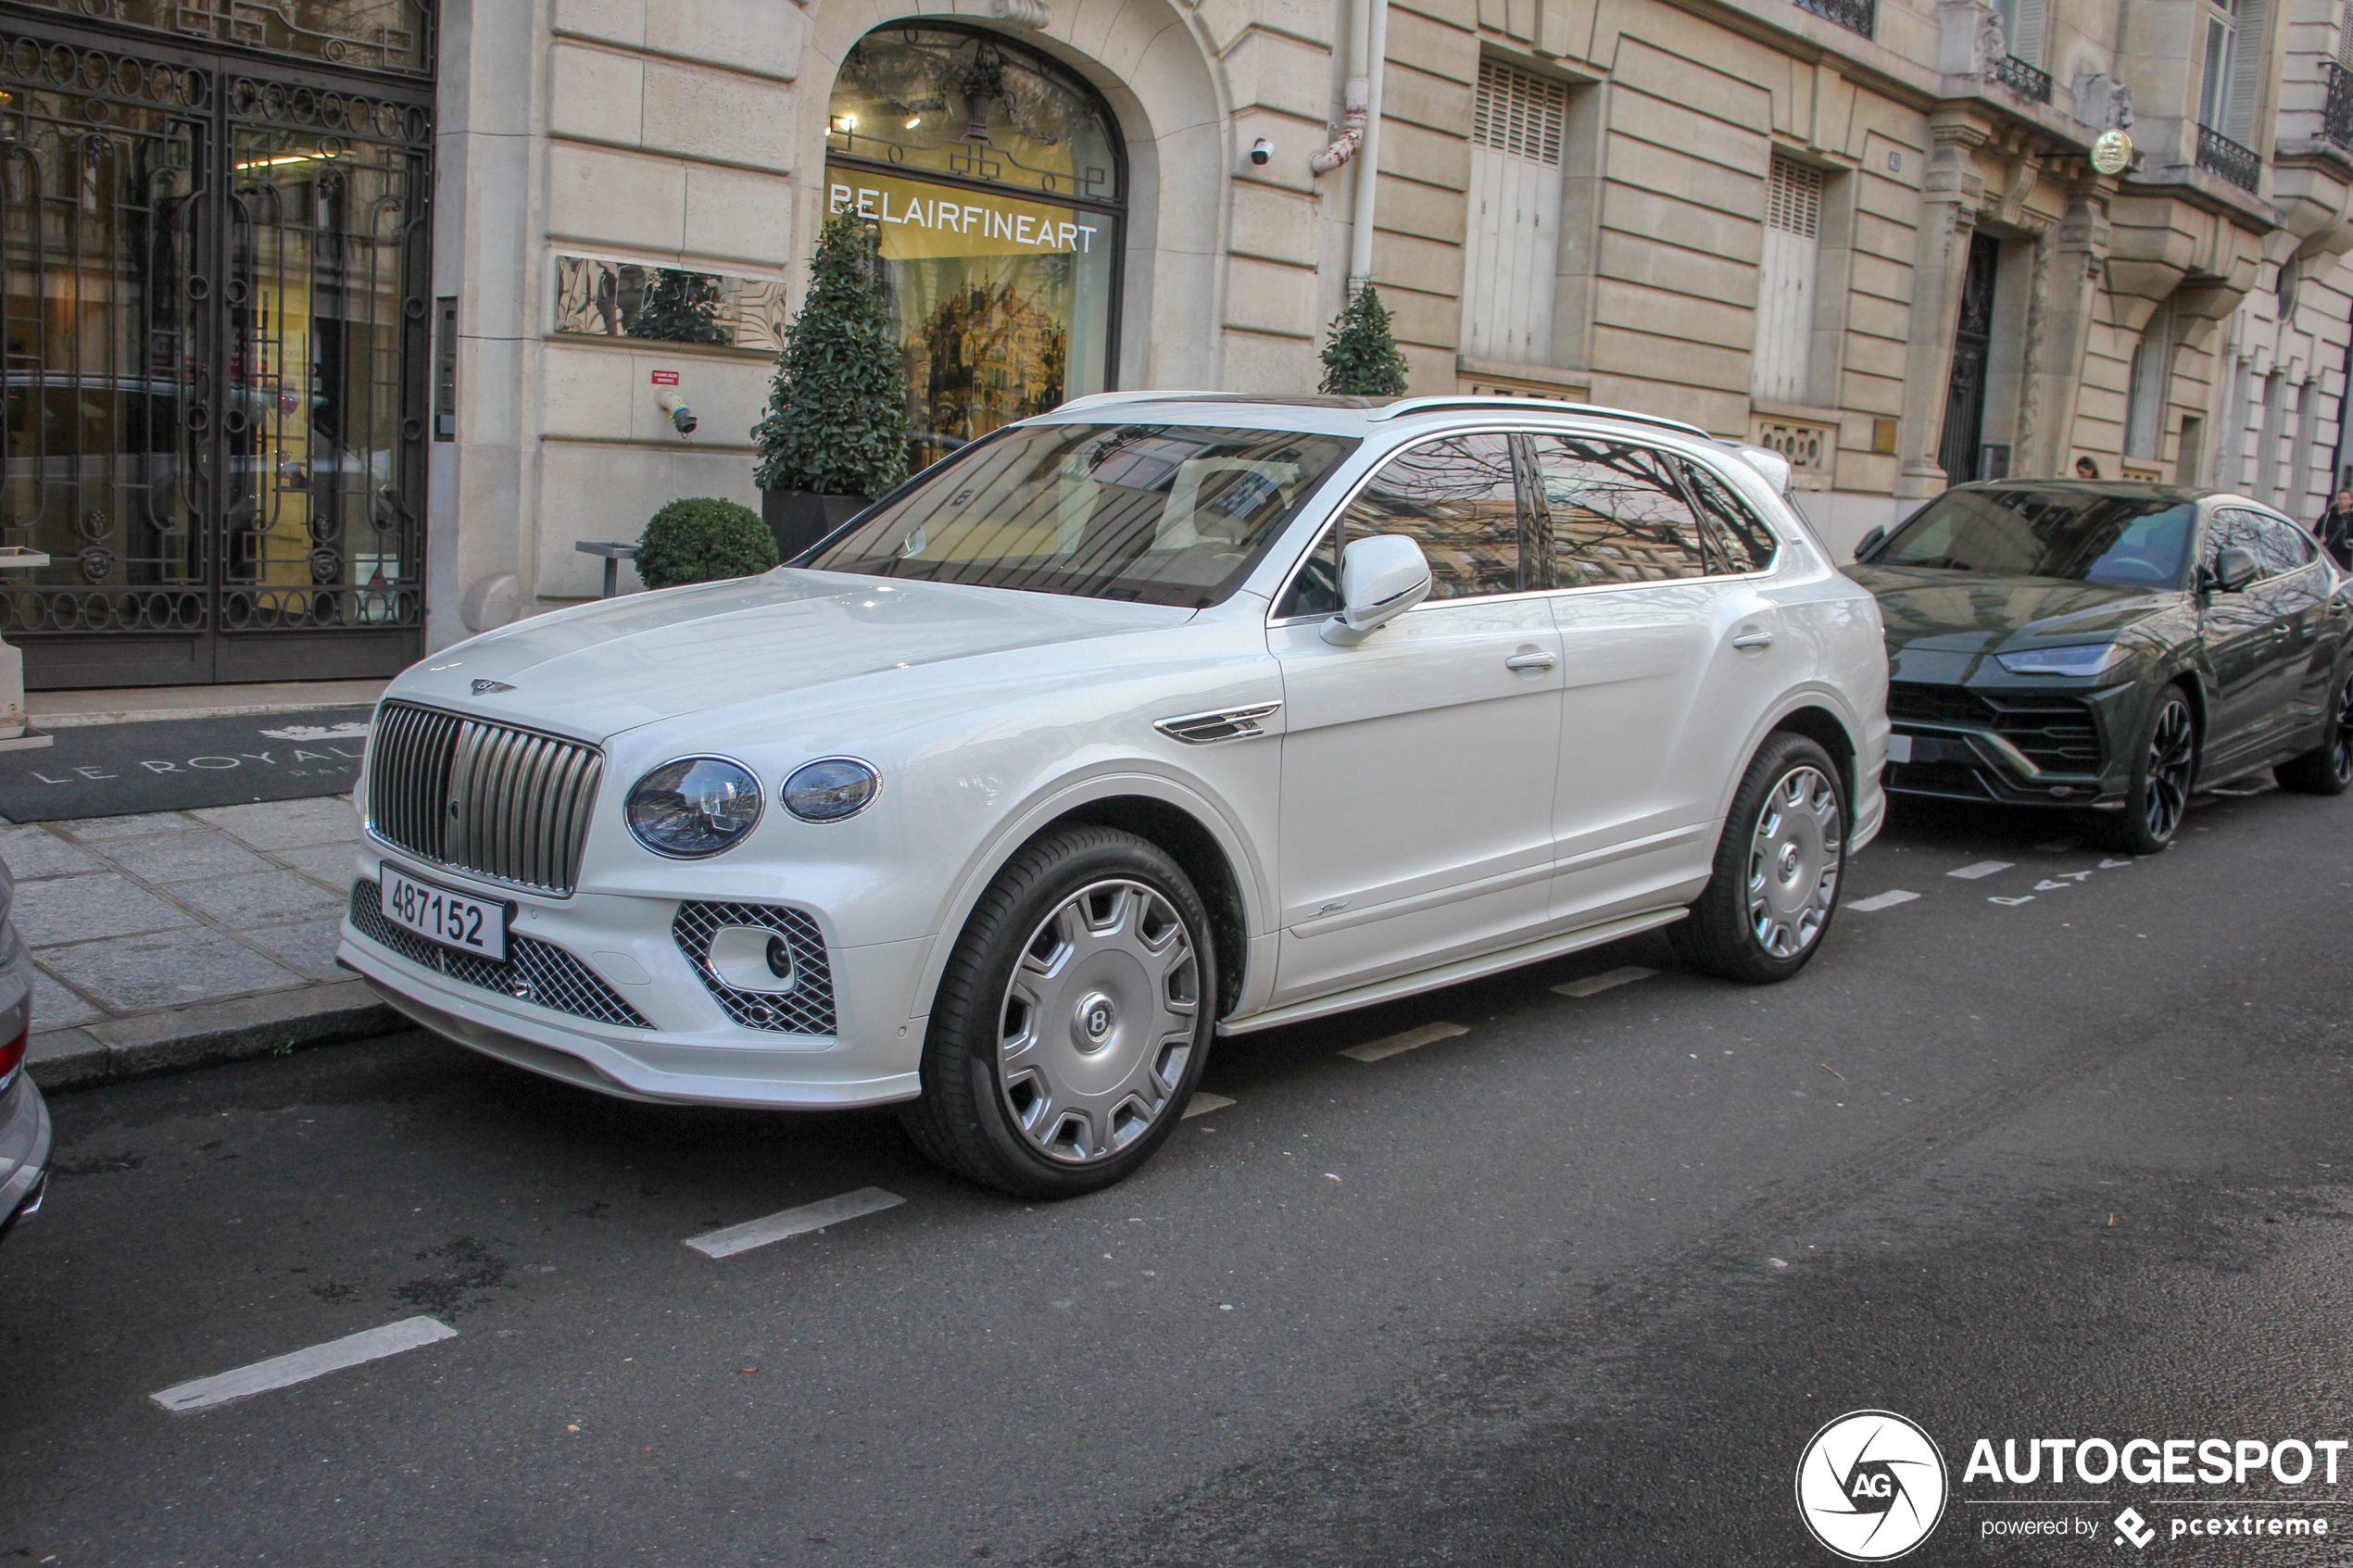 Exclusieve Bentleys uit Qatar duiken op in Parijs